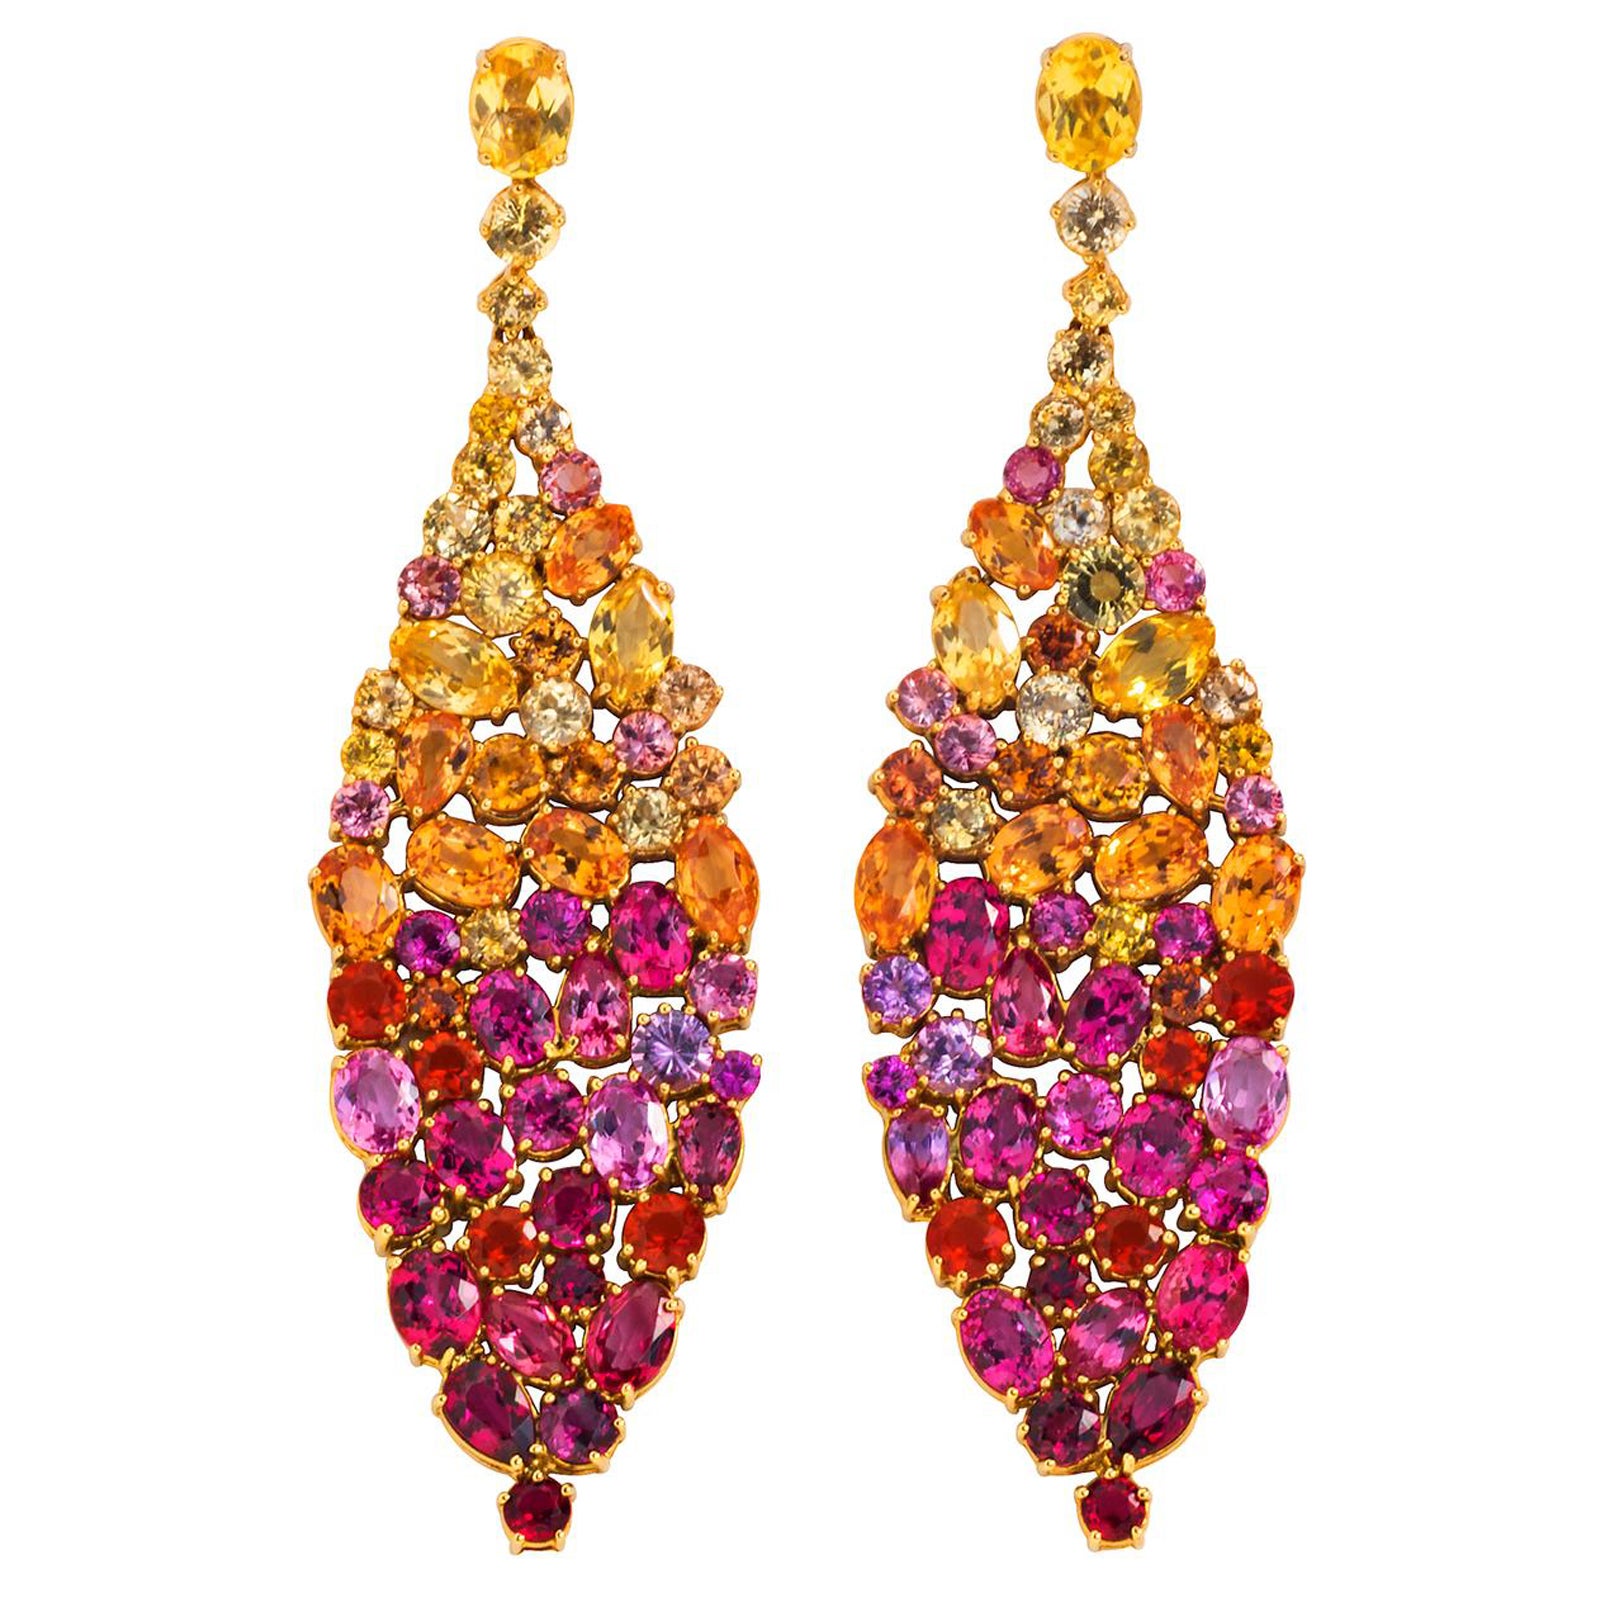 Tiffany & Co. Gem-Set Earrings